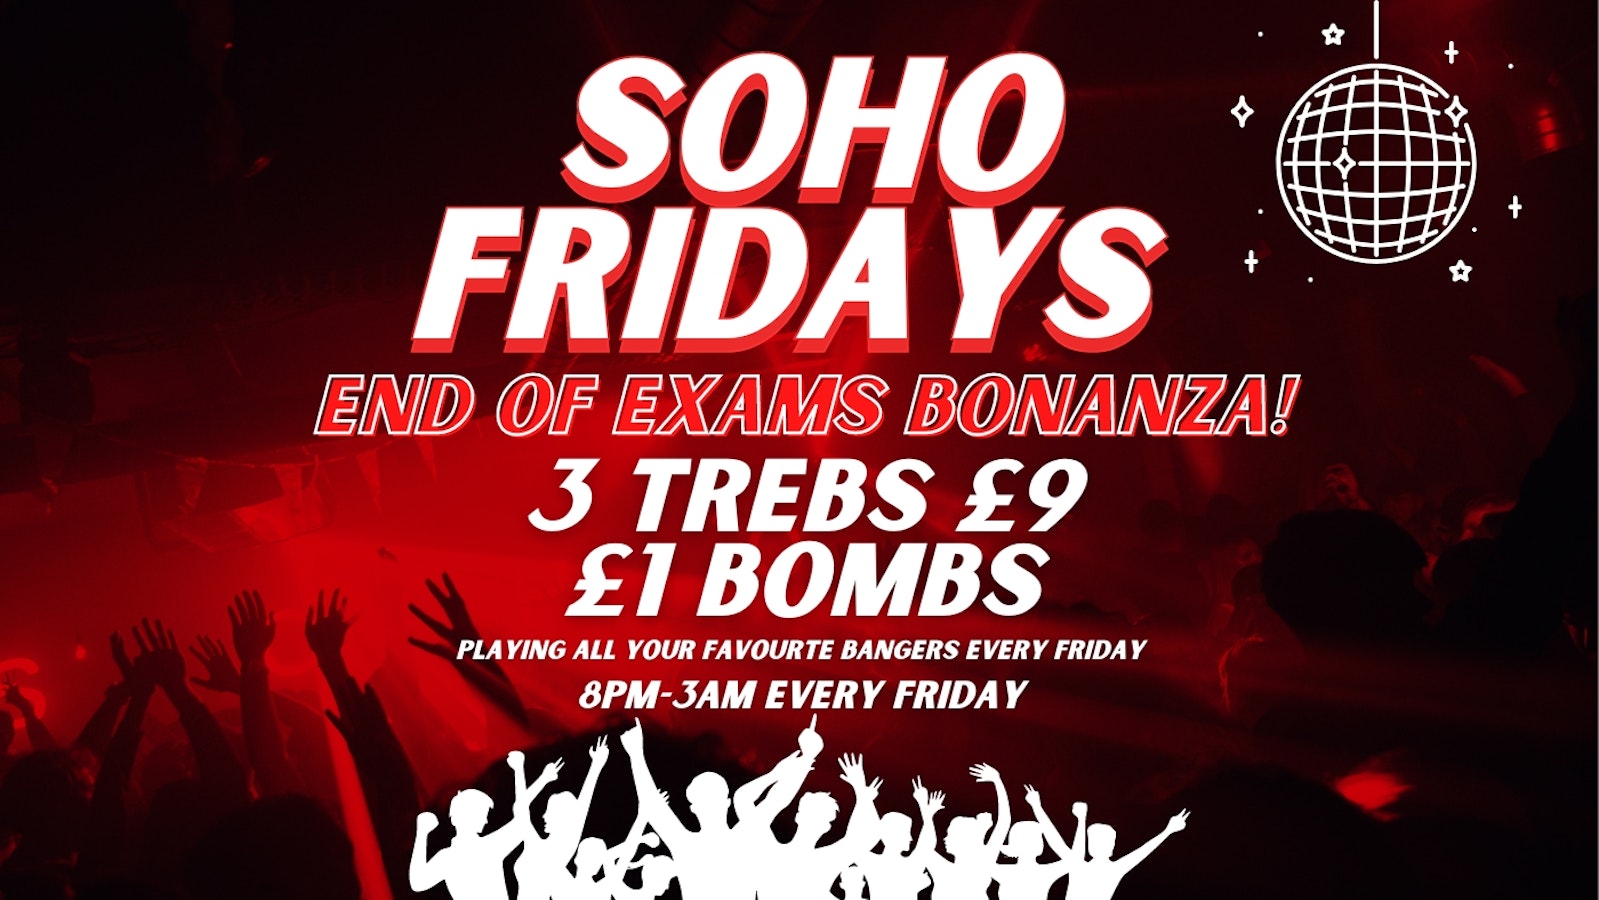 SOHO FRIDAYS | END OF EXAMS BONANZA | 300 FREE TICKETS | 3 TREBS £9 + £1 BOMBS